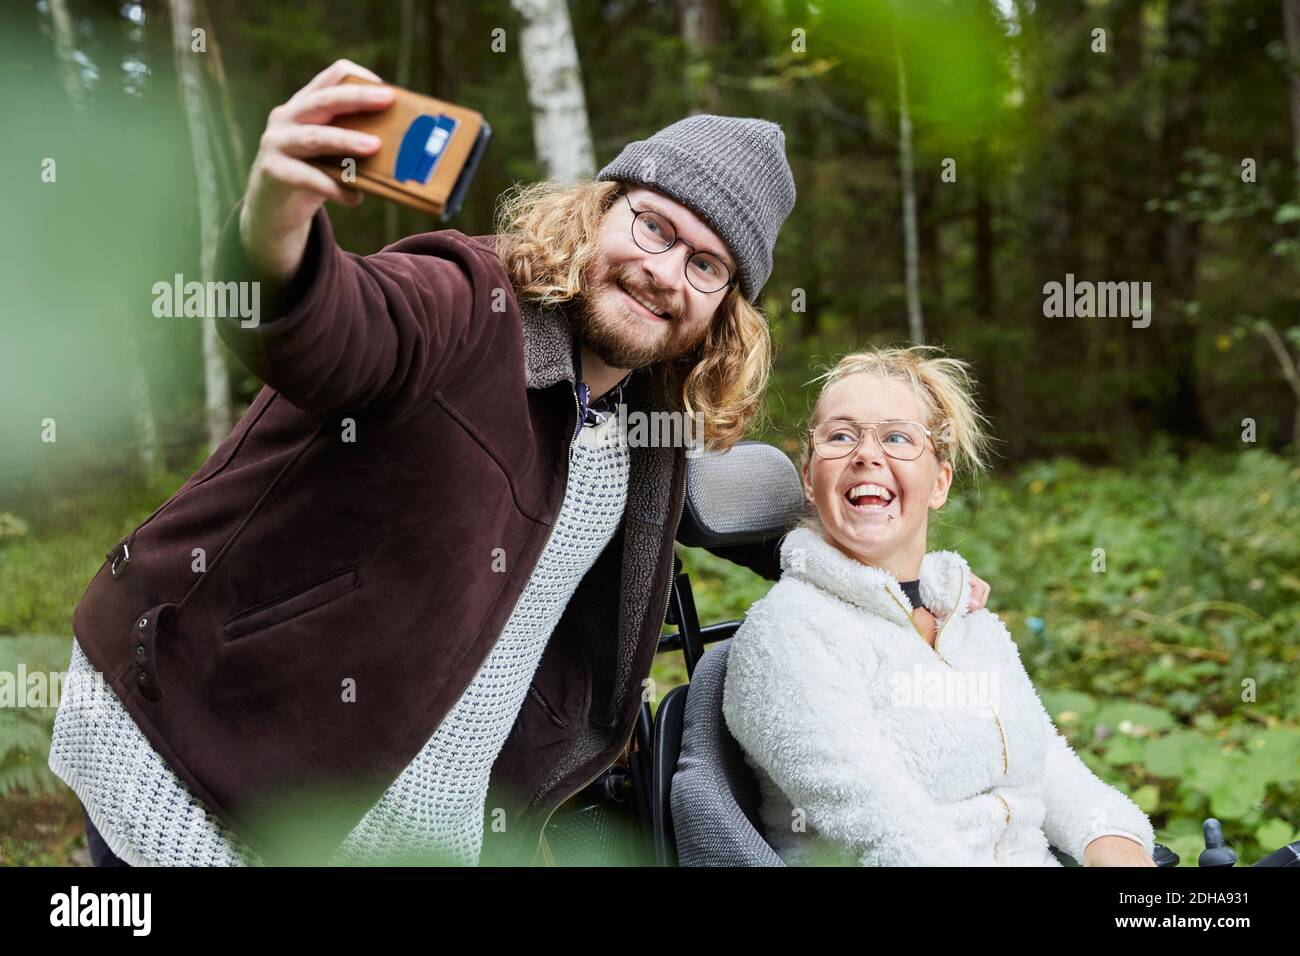 Un jeune gardien prend le selfie avec une femme handicapée dans la forêt Banque D'Images